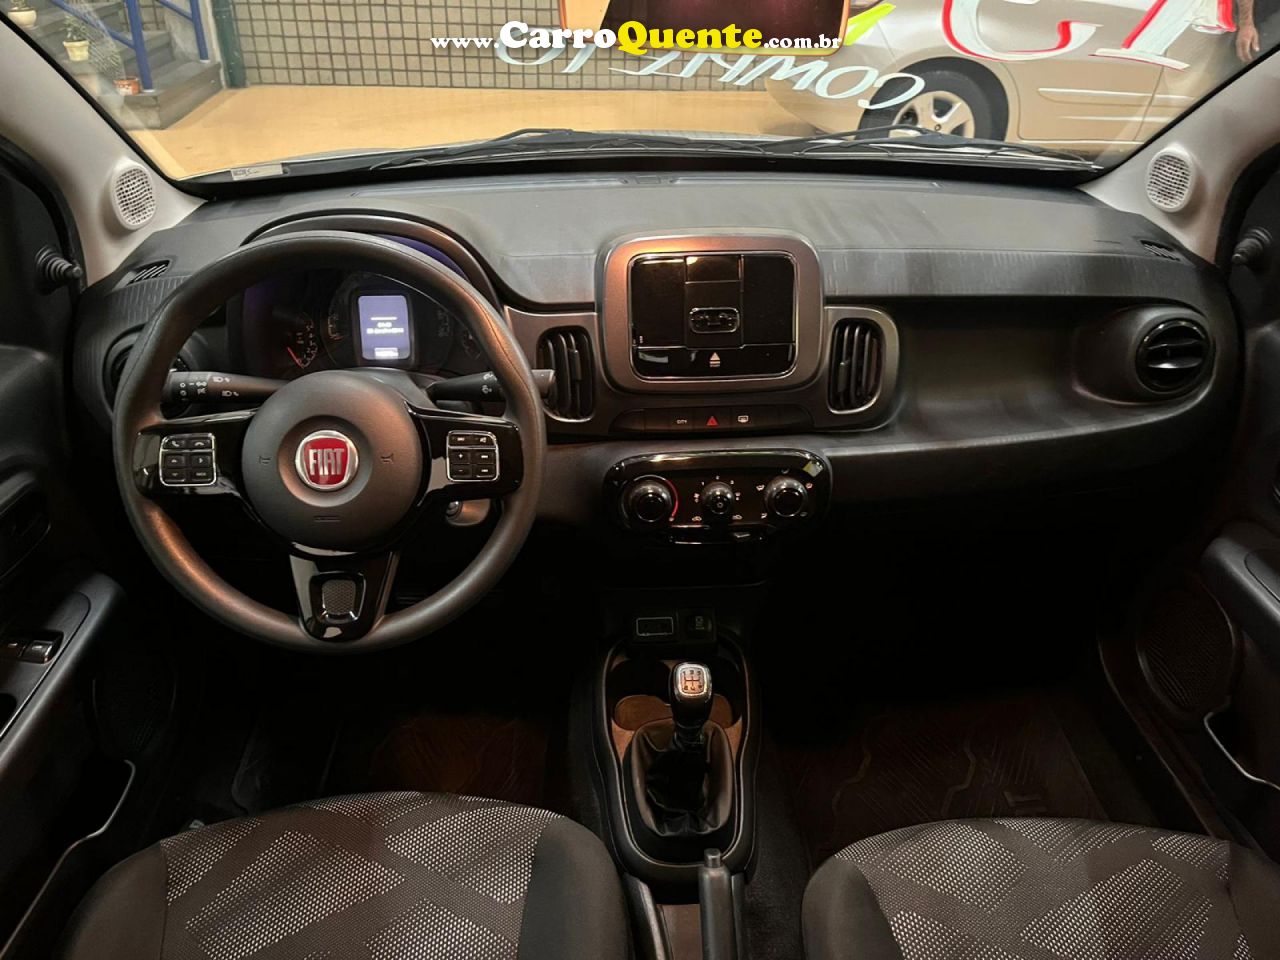 FIAT   MOBI DRIVE 1.0 FLEX 6V 5P   PRATA 2019 1.0 FLEX - Loja